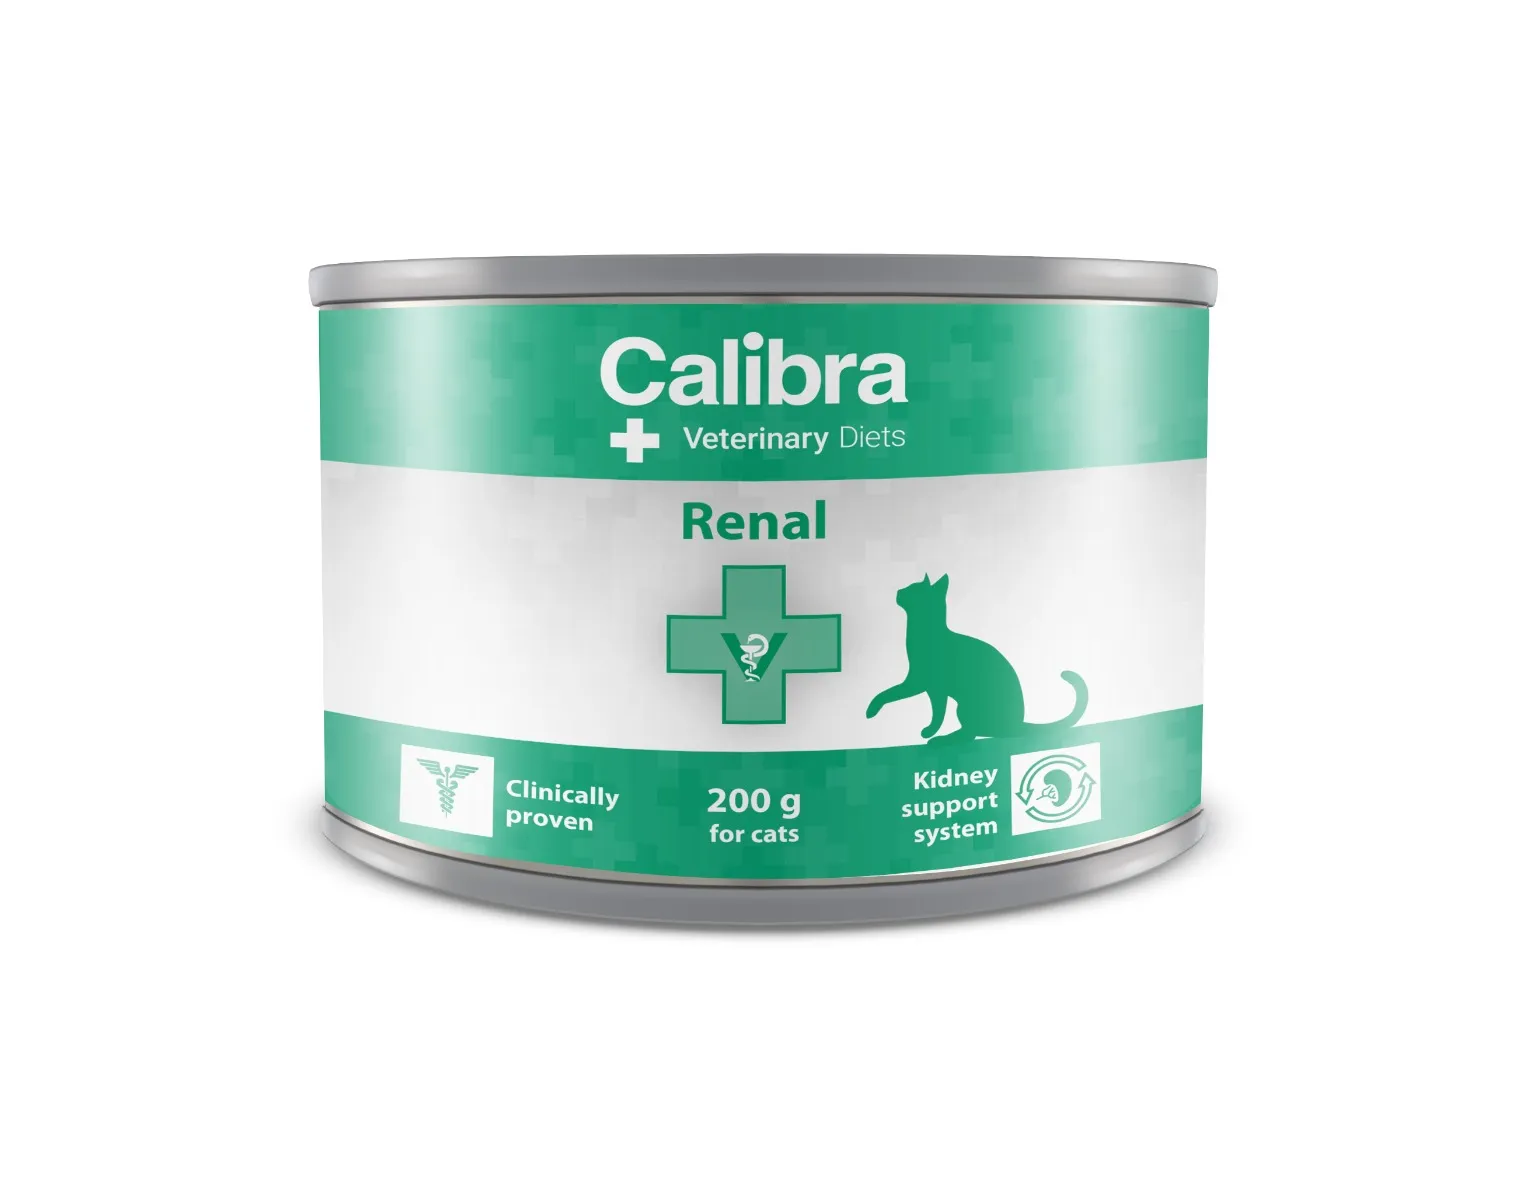 Calibra VD Cat Renal